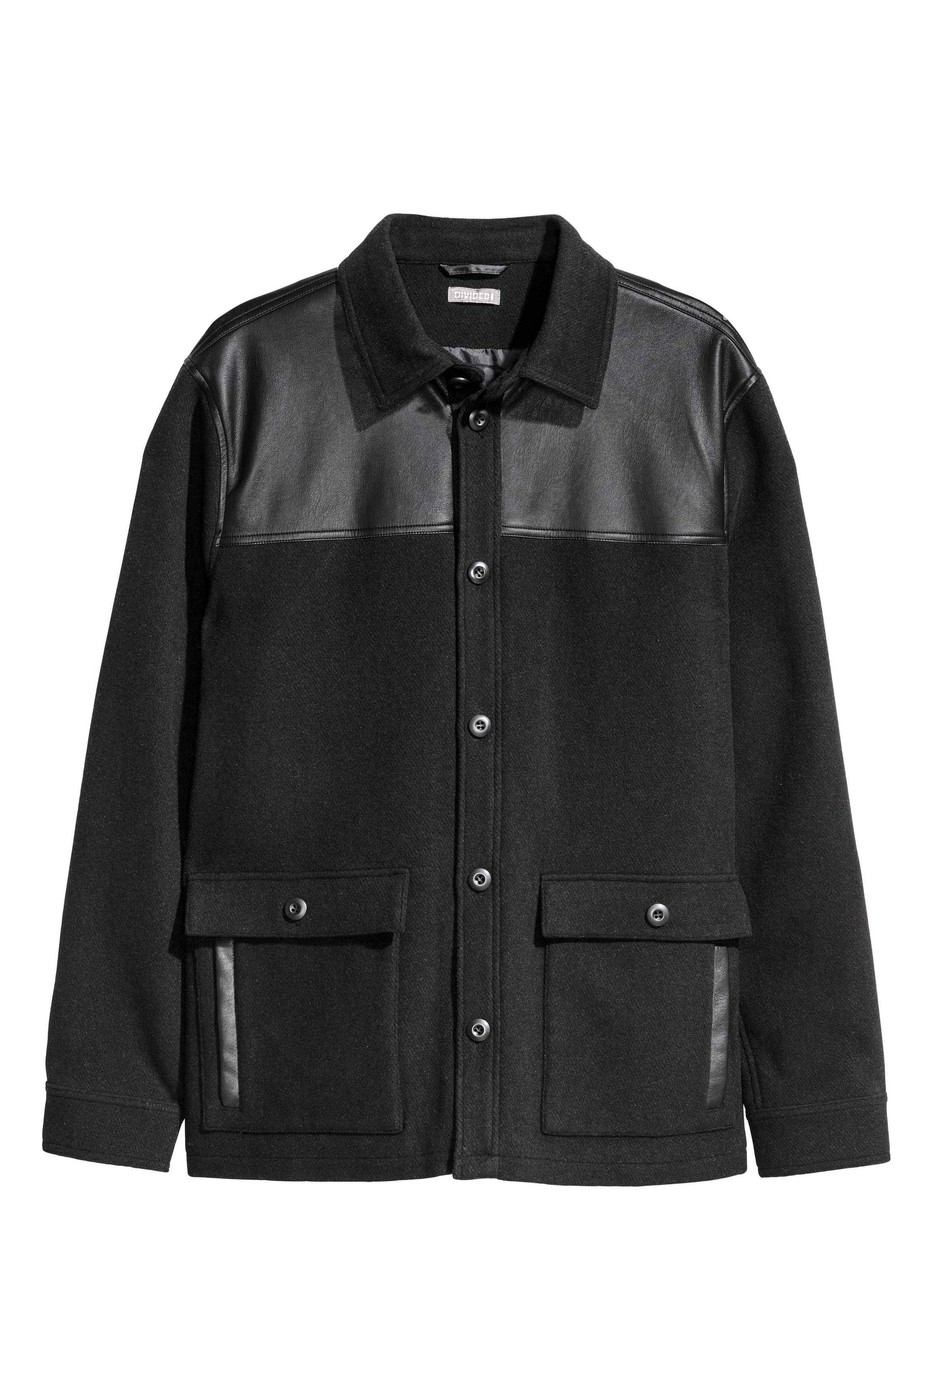 Куртка демисезонная - мужская куртка H&M